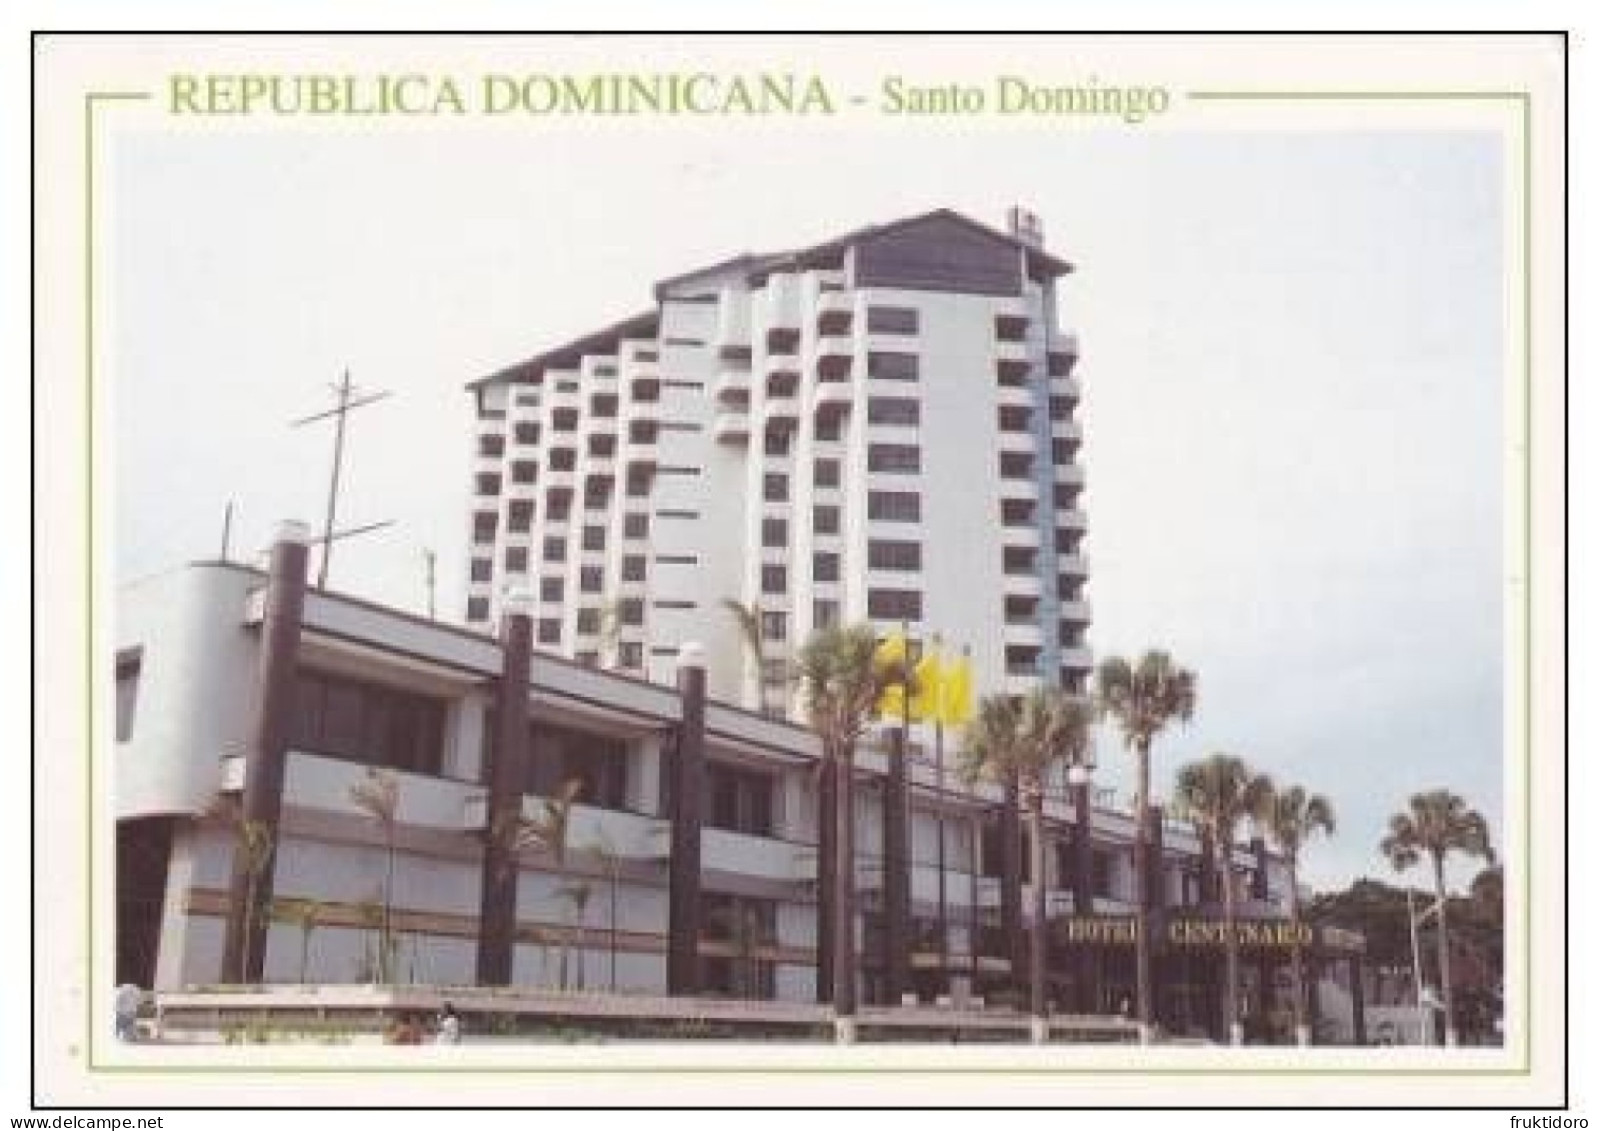 AKDO Dominican Republic Postcards Carnival La Vega - Dorada Beach - Higuey - Los Patos - Santo Domingo - Repubblica Dominicana